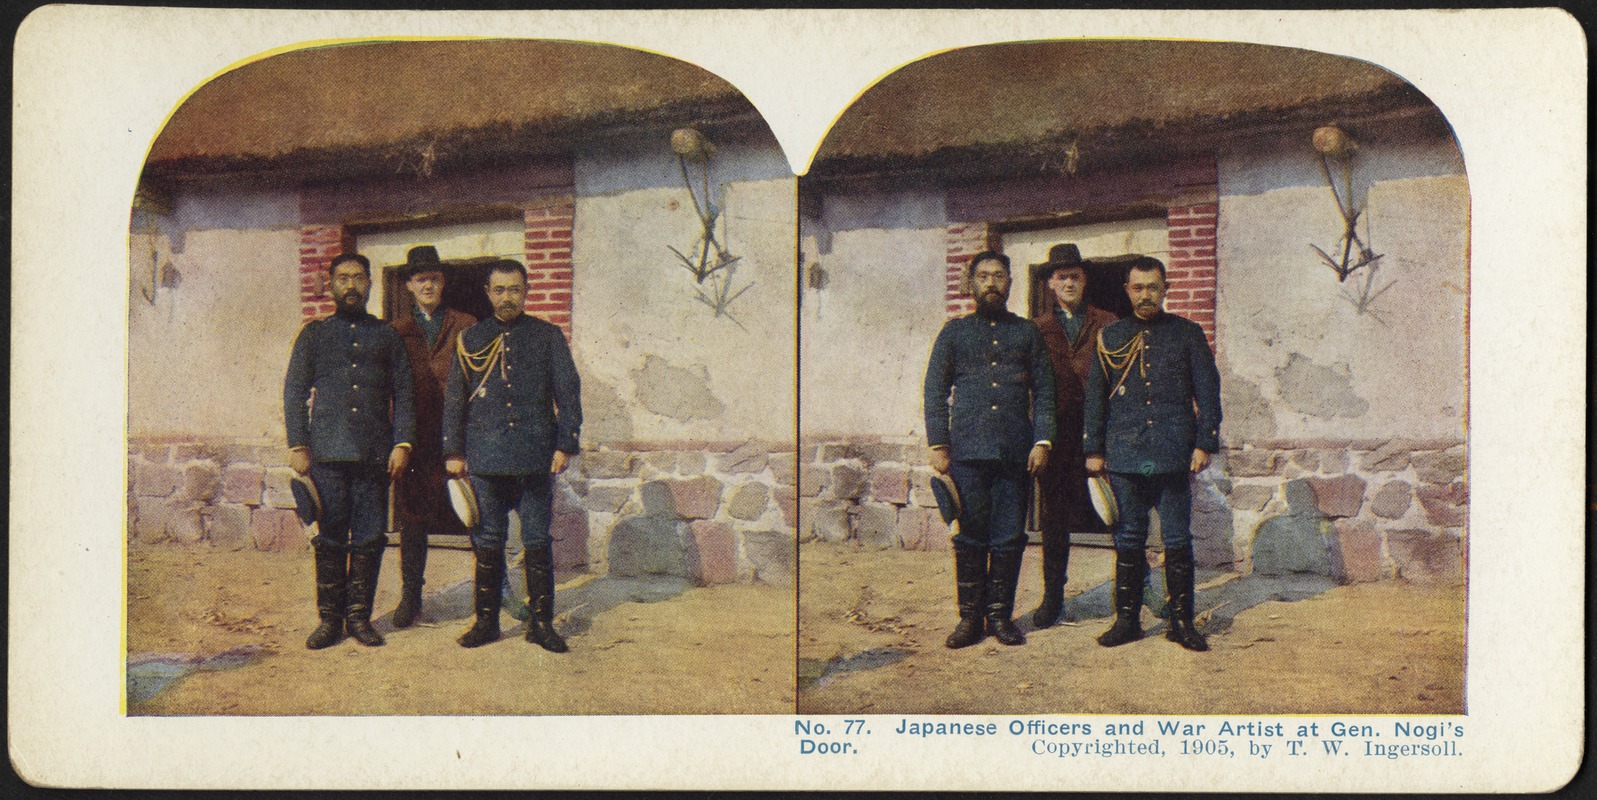 Japanese officers and war artist at Gen. Nogi's door